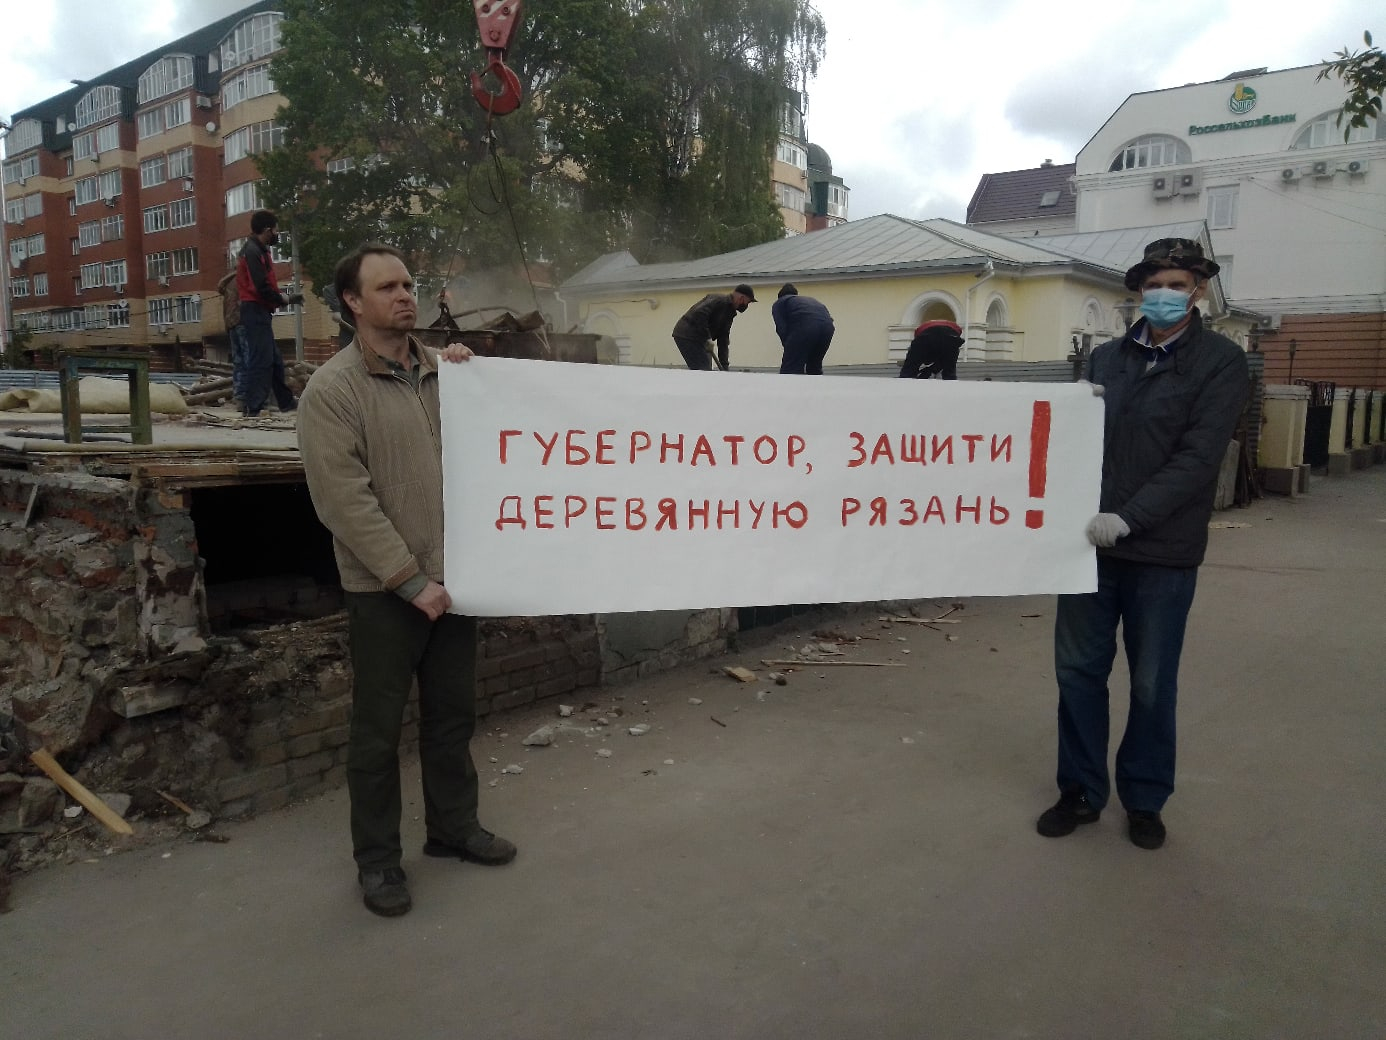 Деревянная Рязань: активисты устроили пикет против сноса старинного дома